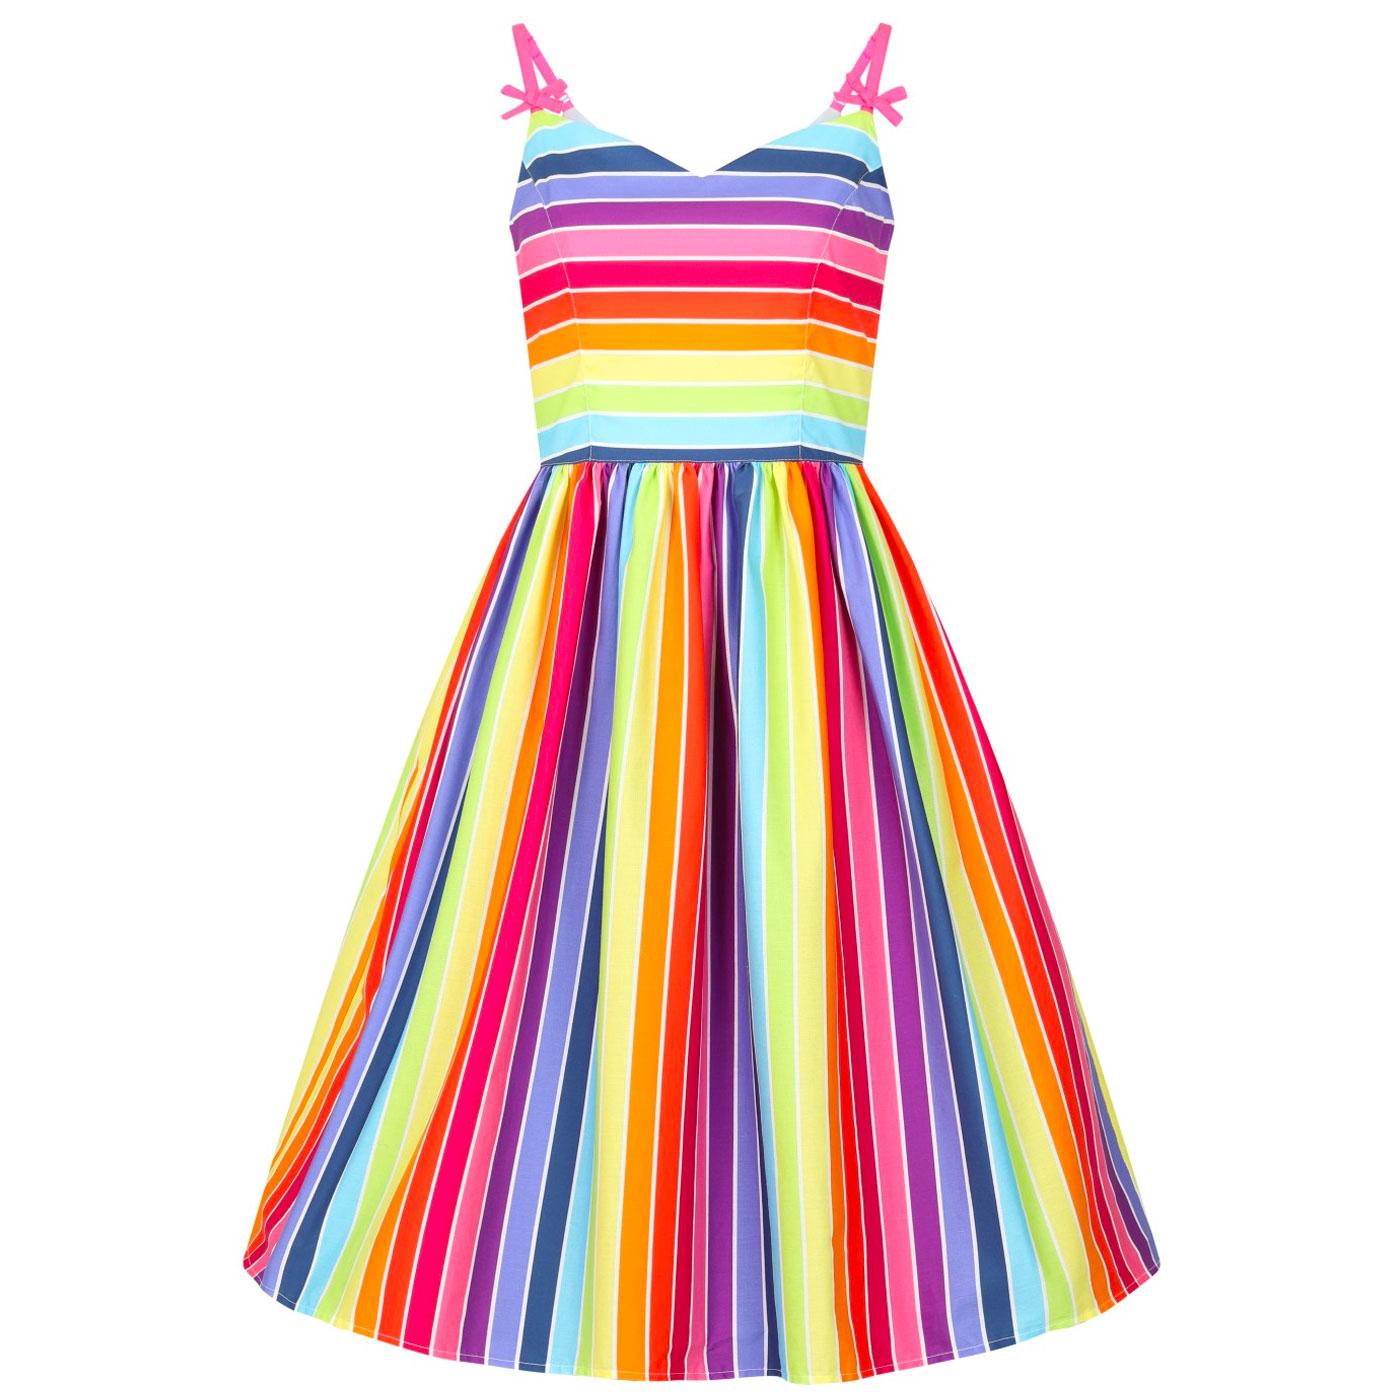 Over The Rainbow HELL BUNNY 50s Summer Dress